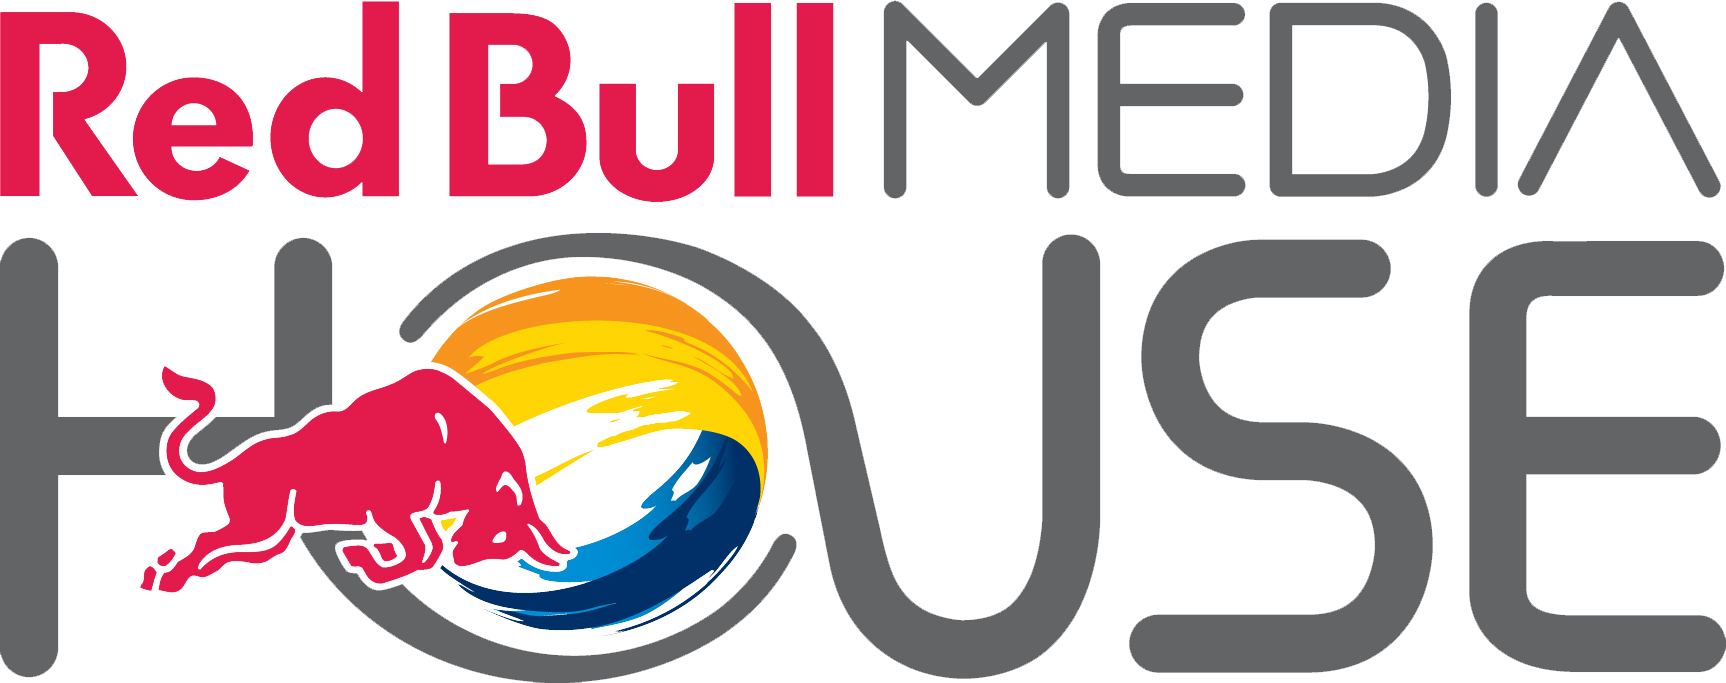 Red-Bull-Media-House-Logo-1.png